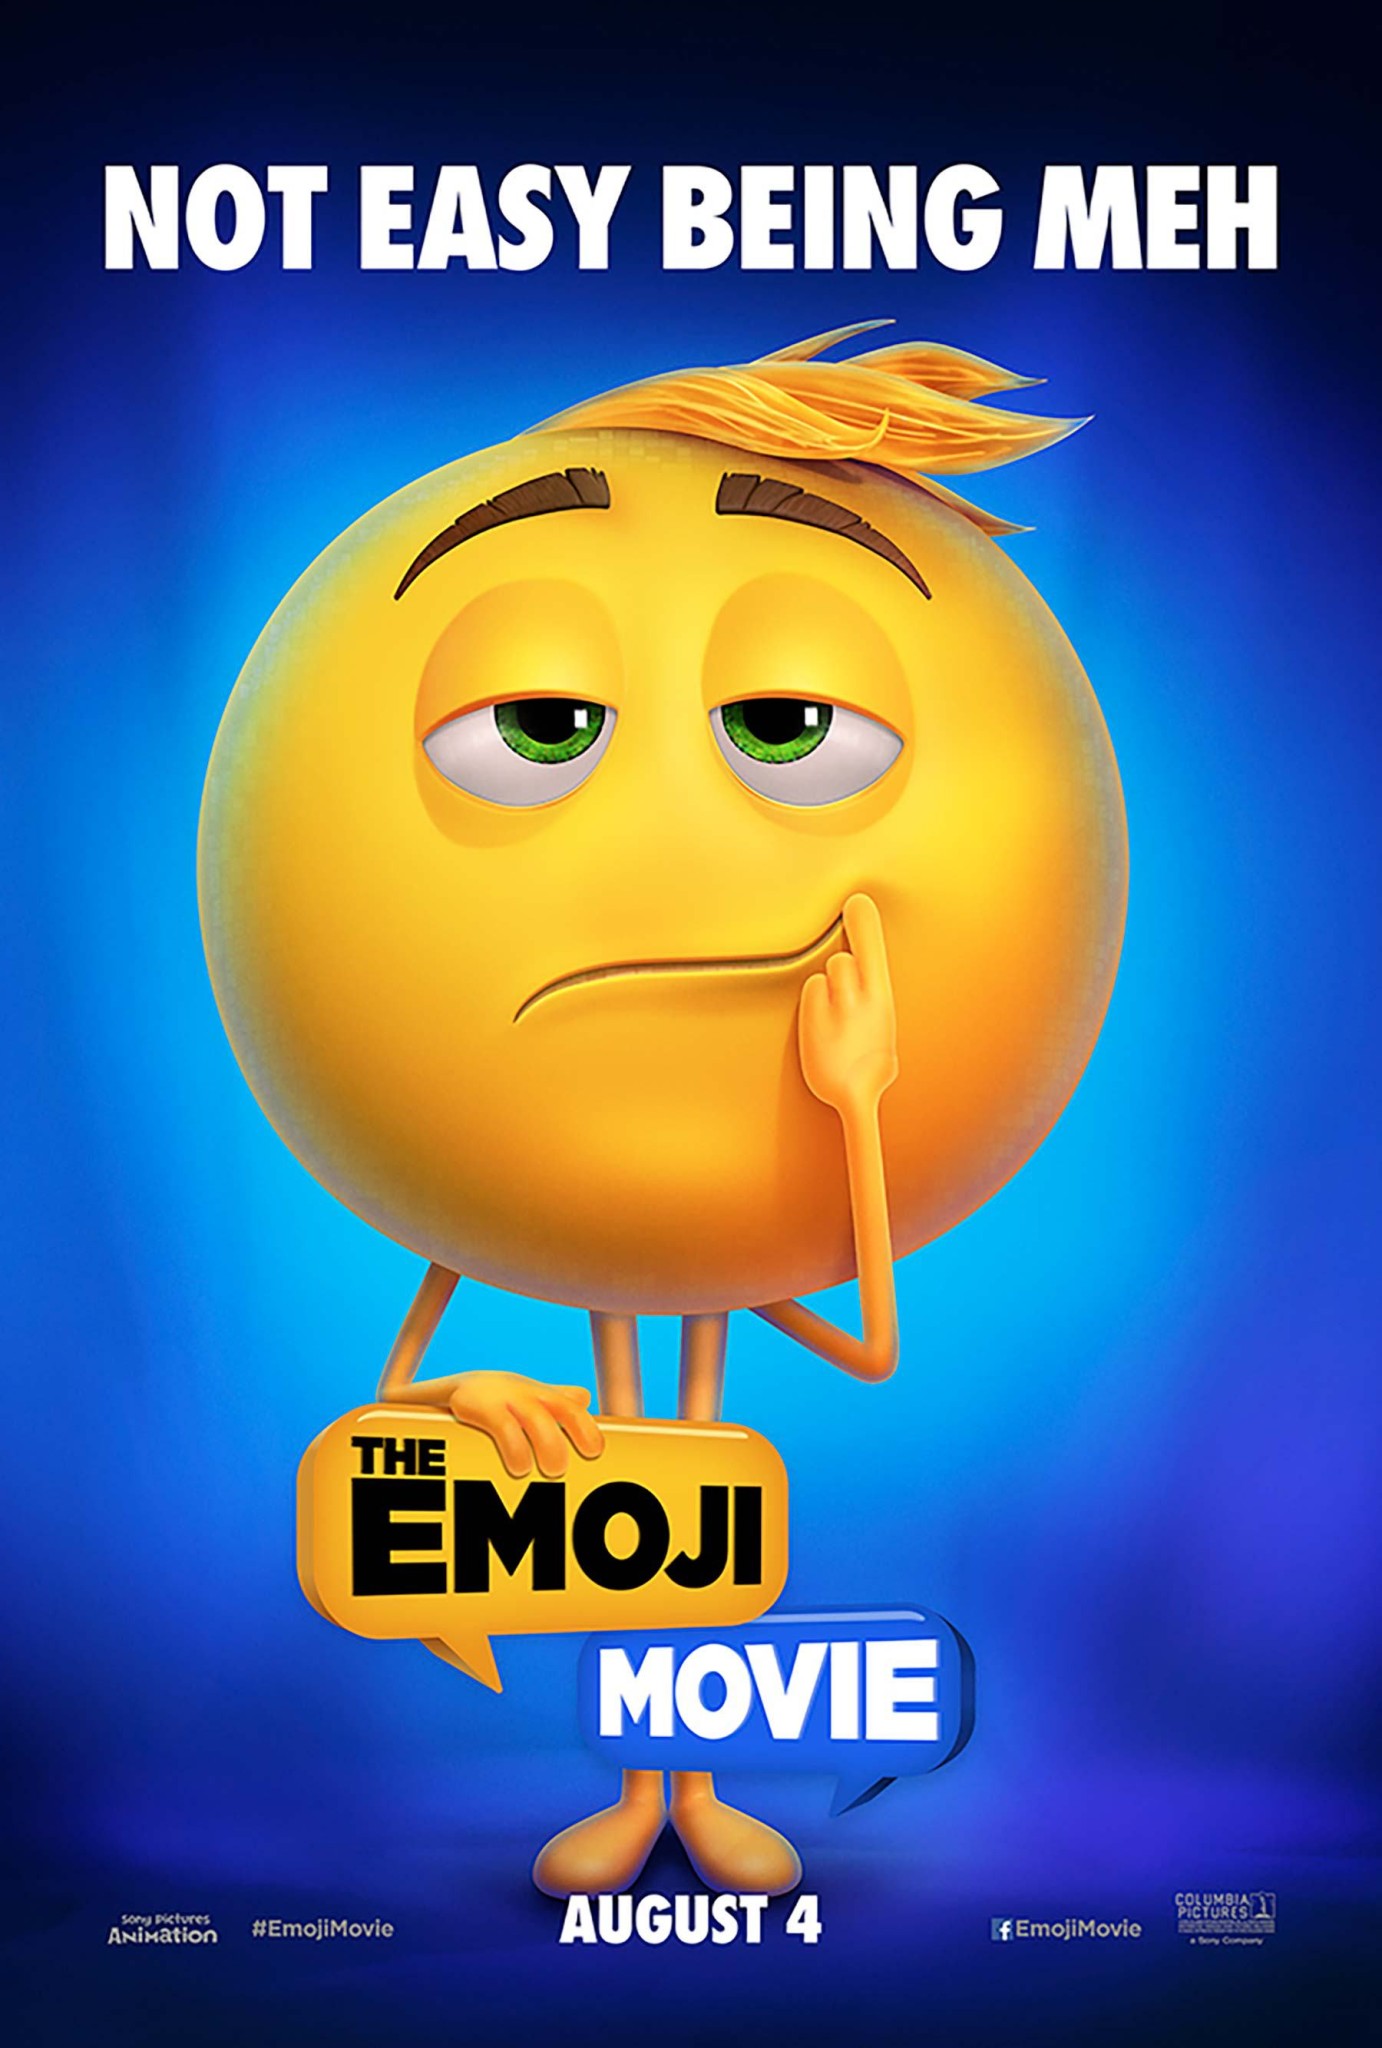 $!Primer avance de la película “The Emoji Movie”